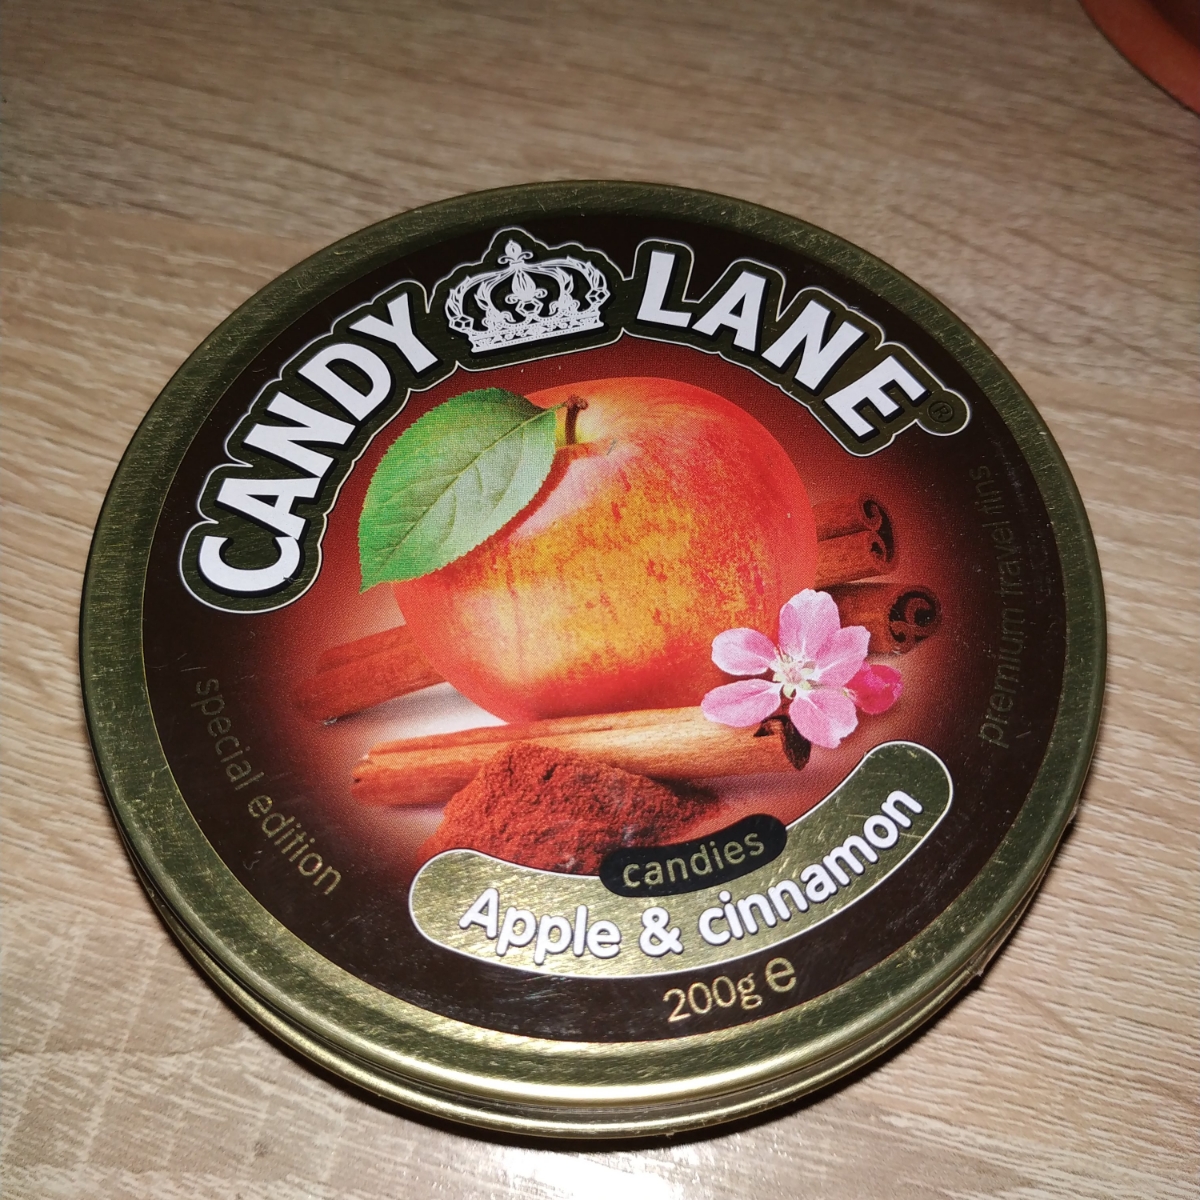 Производитель dolce. Candy Lane леденцы яблоко с корицей. Яблоко с корицей конфеты Candy Lane. Candy Lane леденцы в пакете, 90. Производитель "сладкая фантазия".